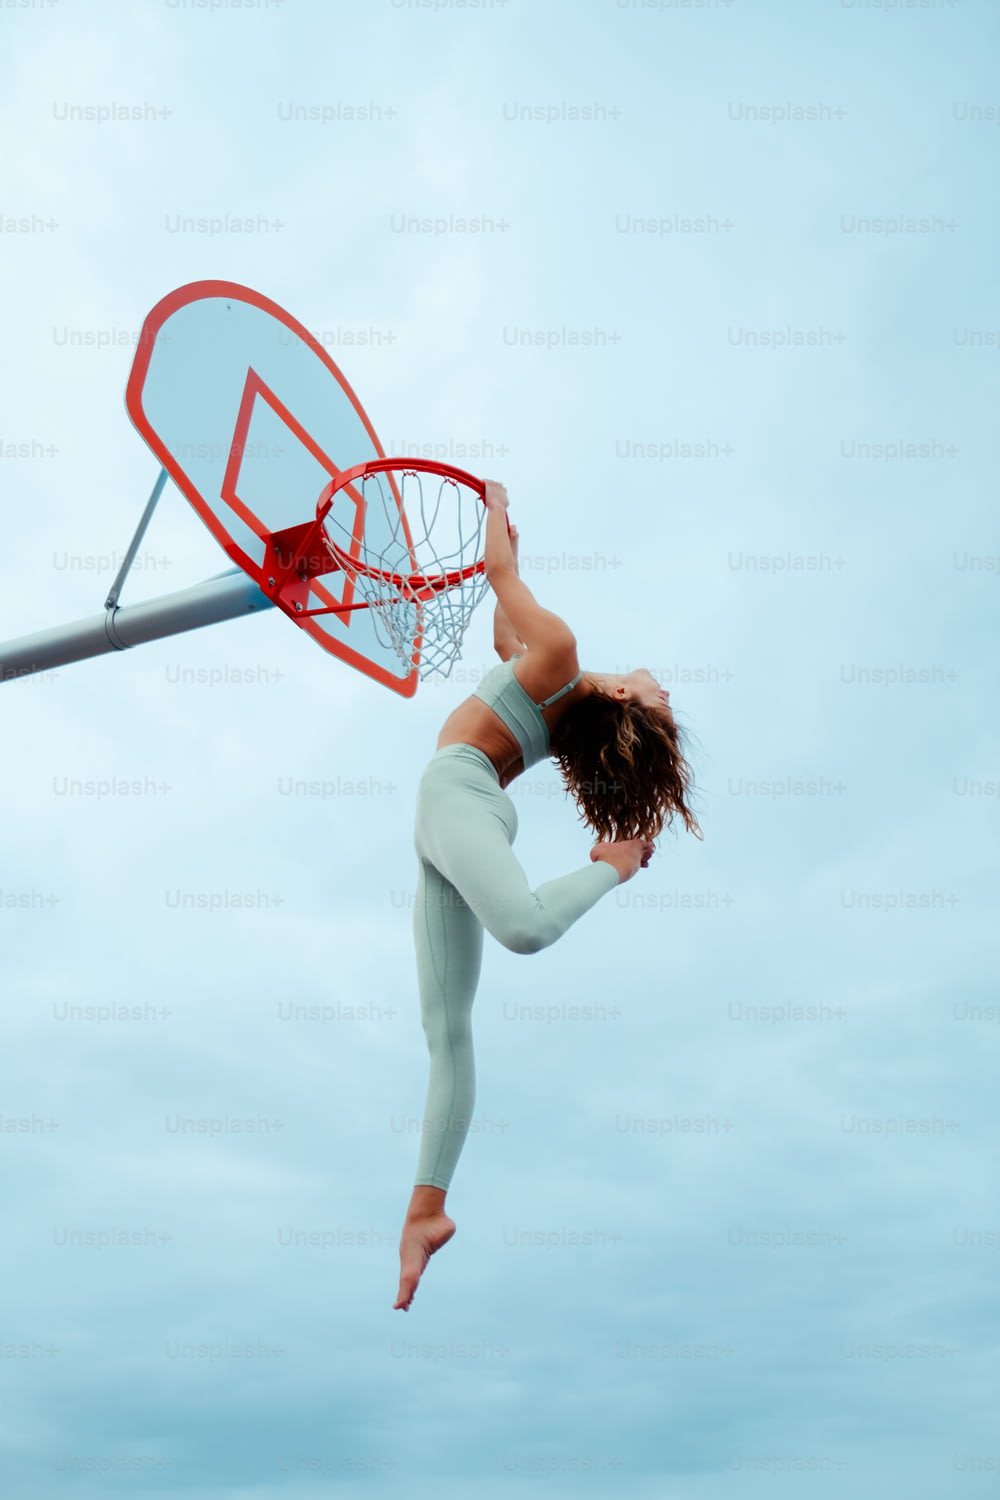 Eine Frau springt in die Luft, um einen Basketball zu tauchen